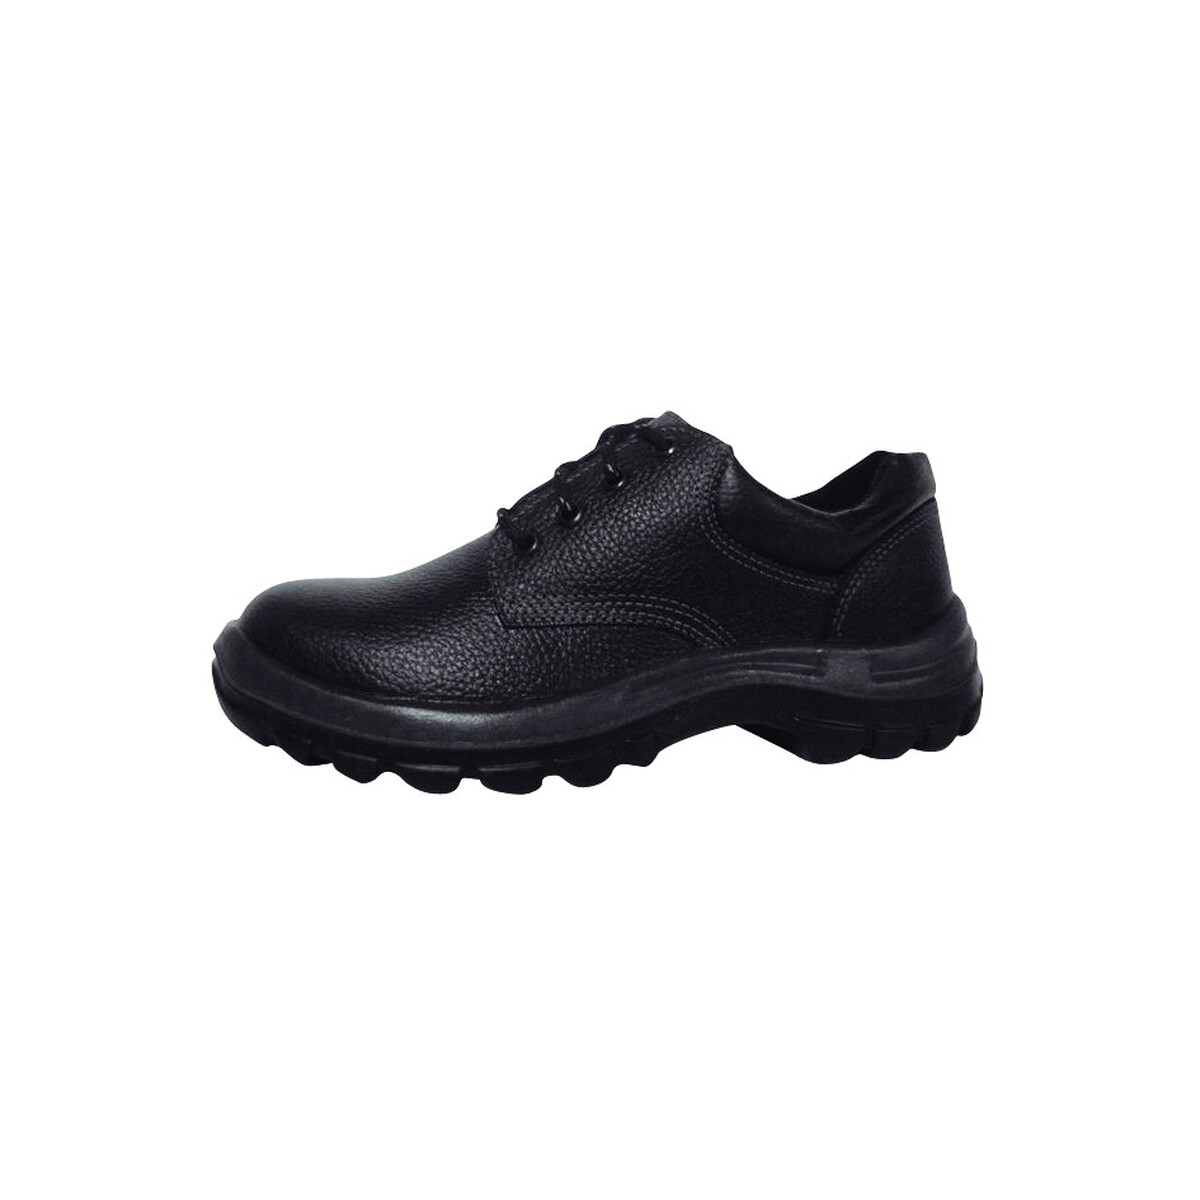 Zapato industrial con puntera plástica - Worksafe Nº 36 